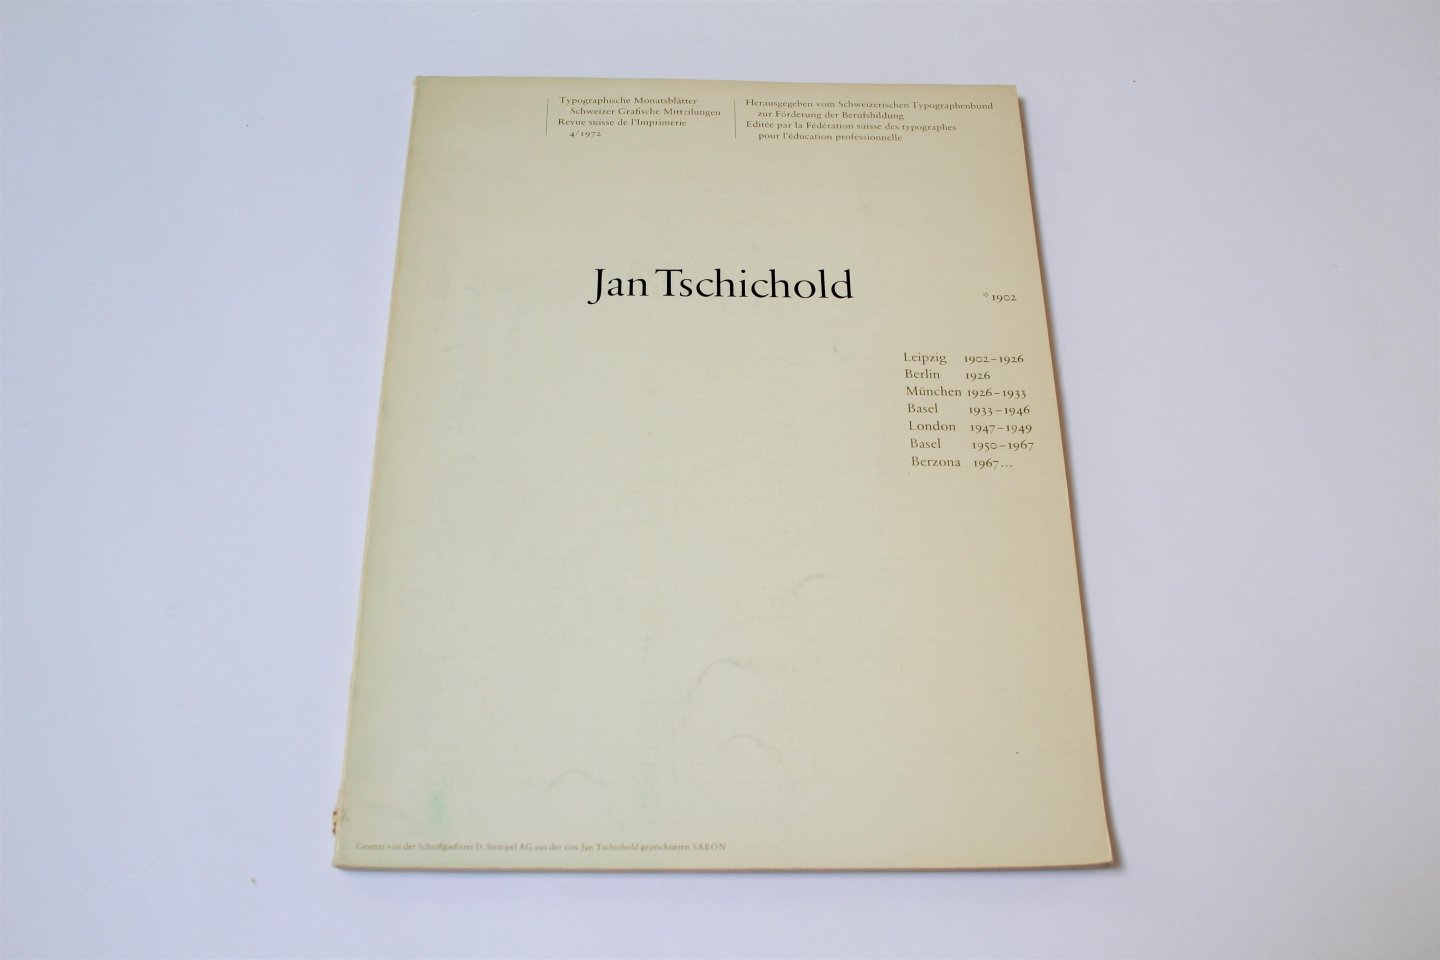 Jan Tschichold - Typographische Monatsblätter Schweizer Graphische Mitteilungen / Revue suisse de l'Imprimerie 4/1972